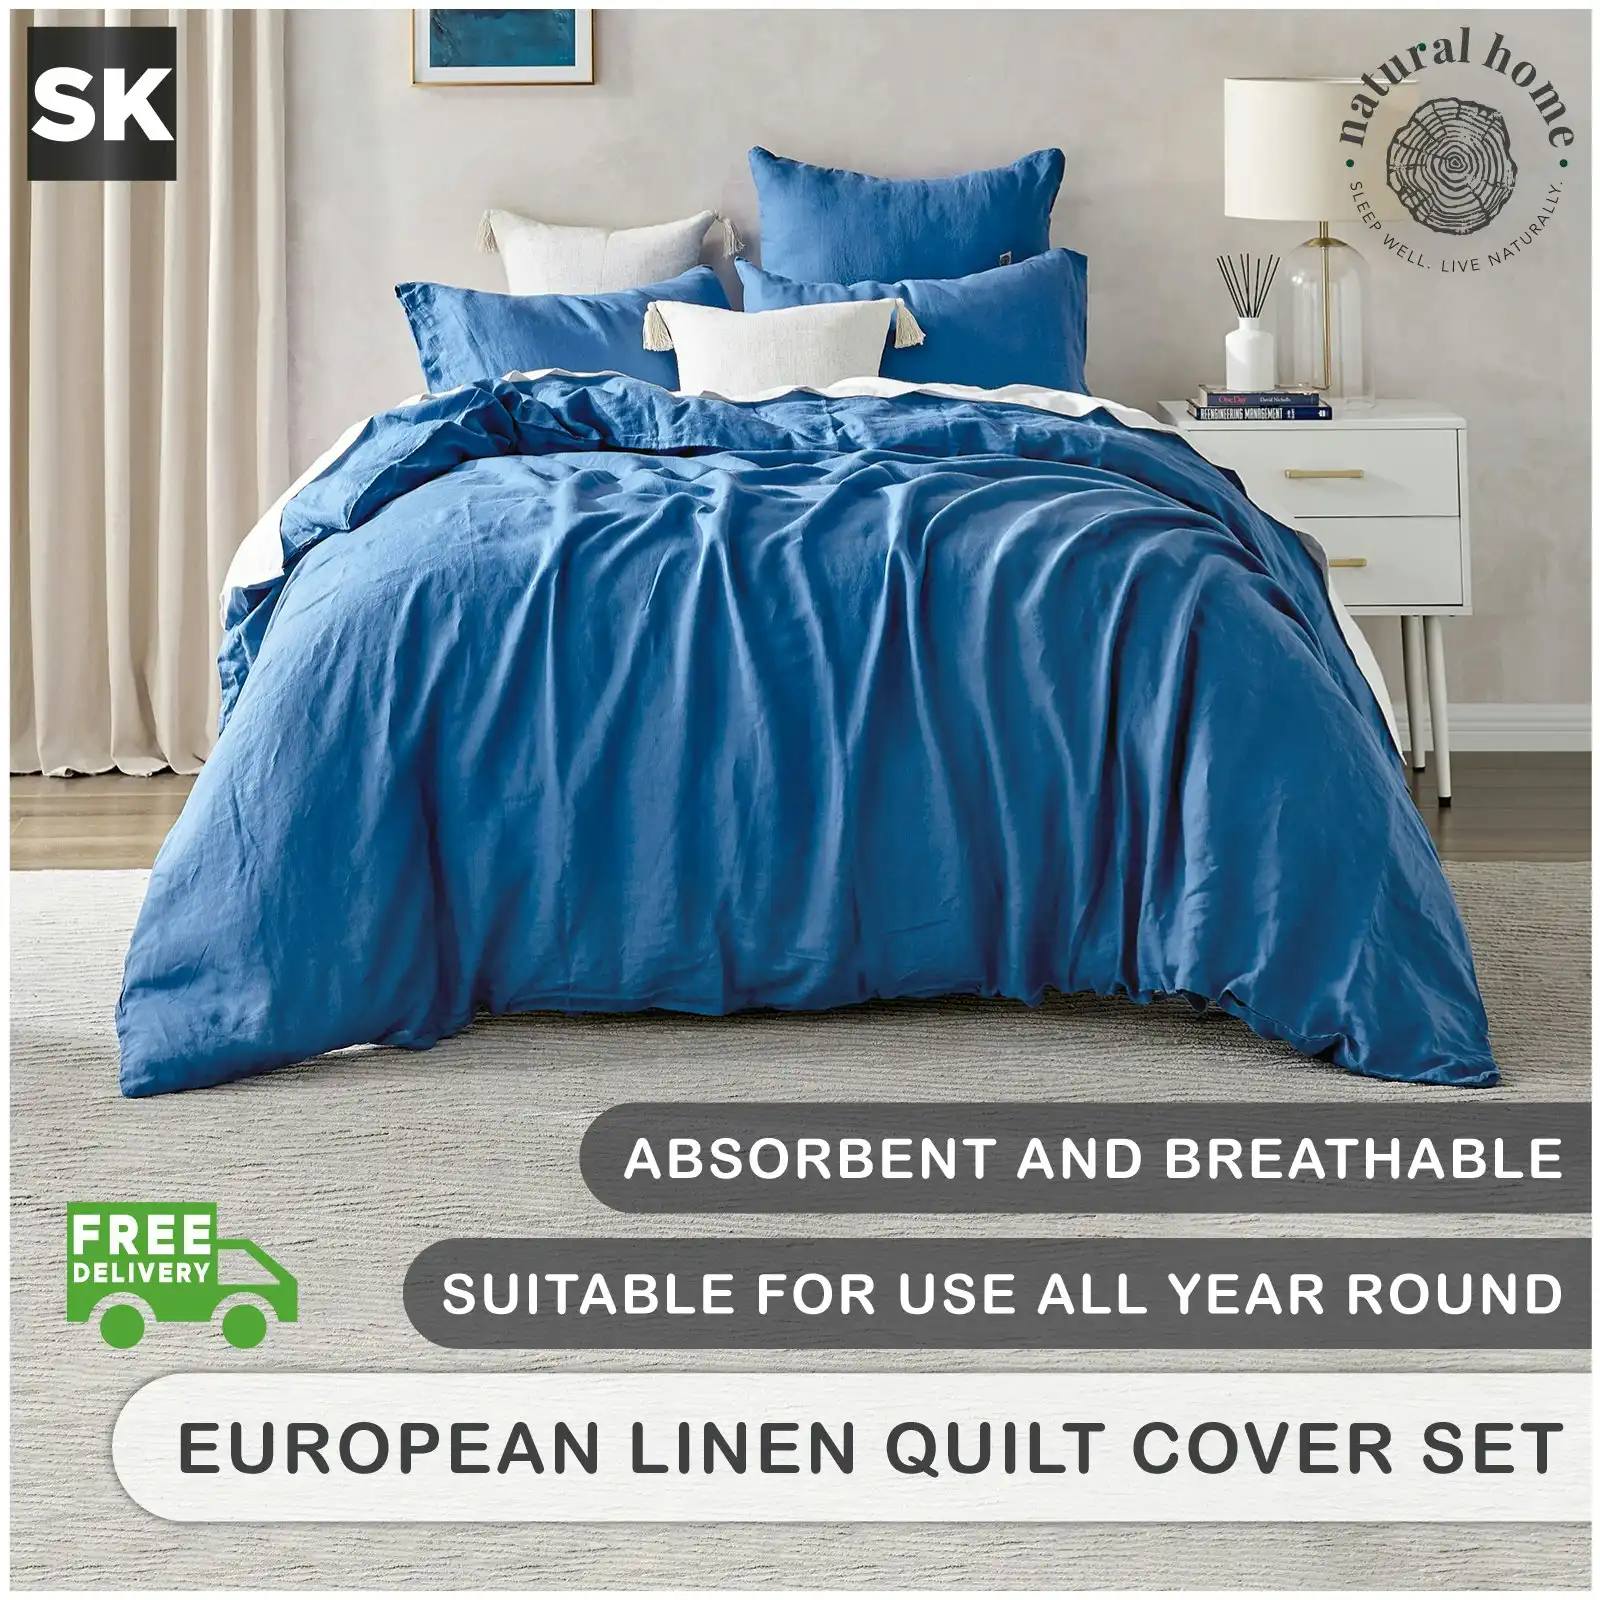 Natural Home Linen 100% European Flax Linen Quilt Cover Set - Deep Blue - Super King Bed